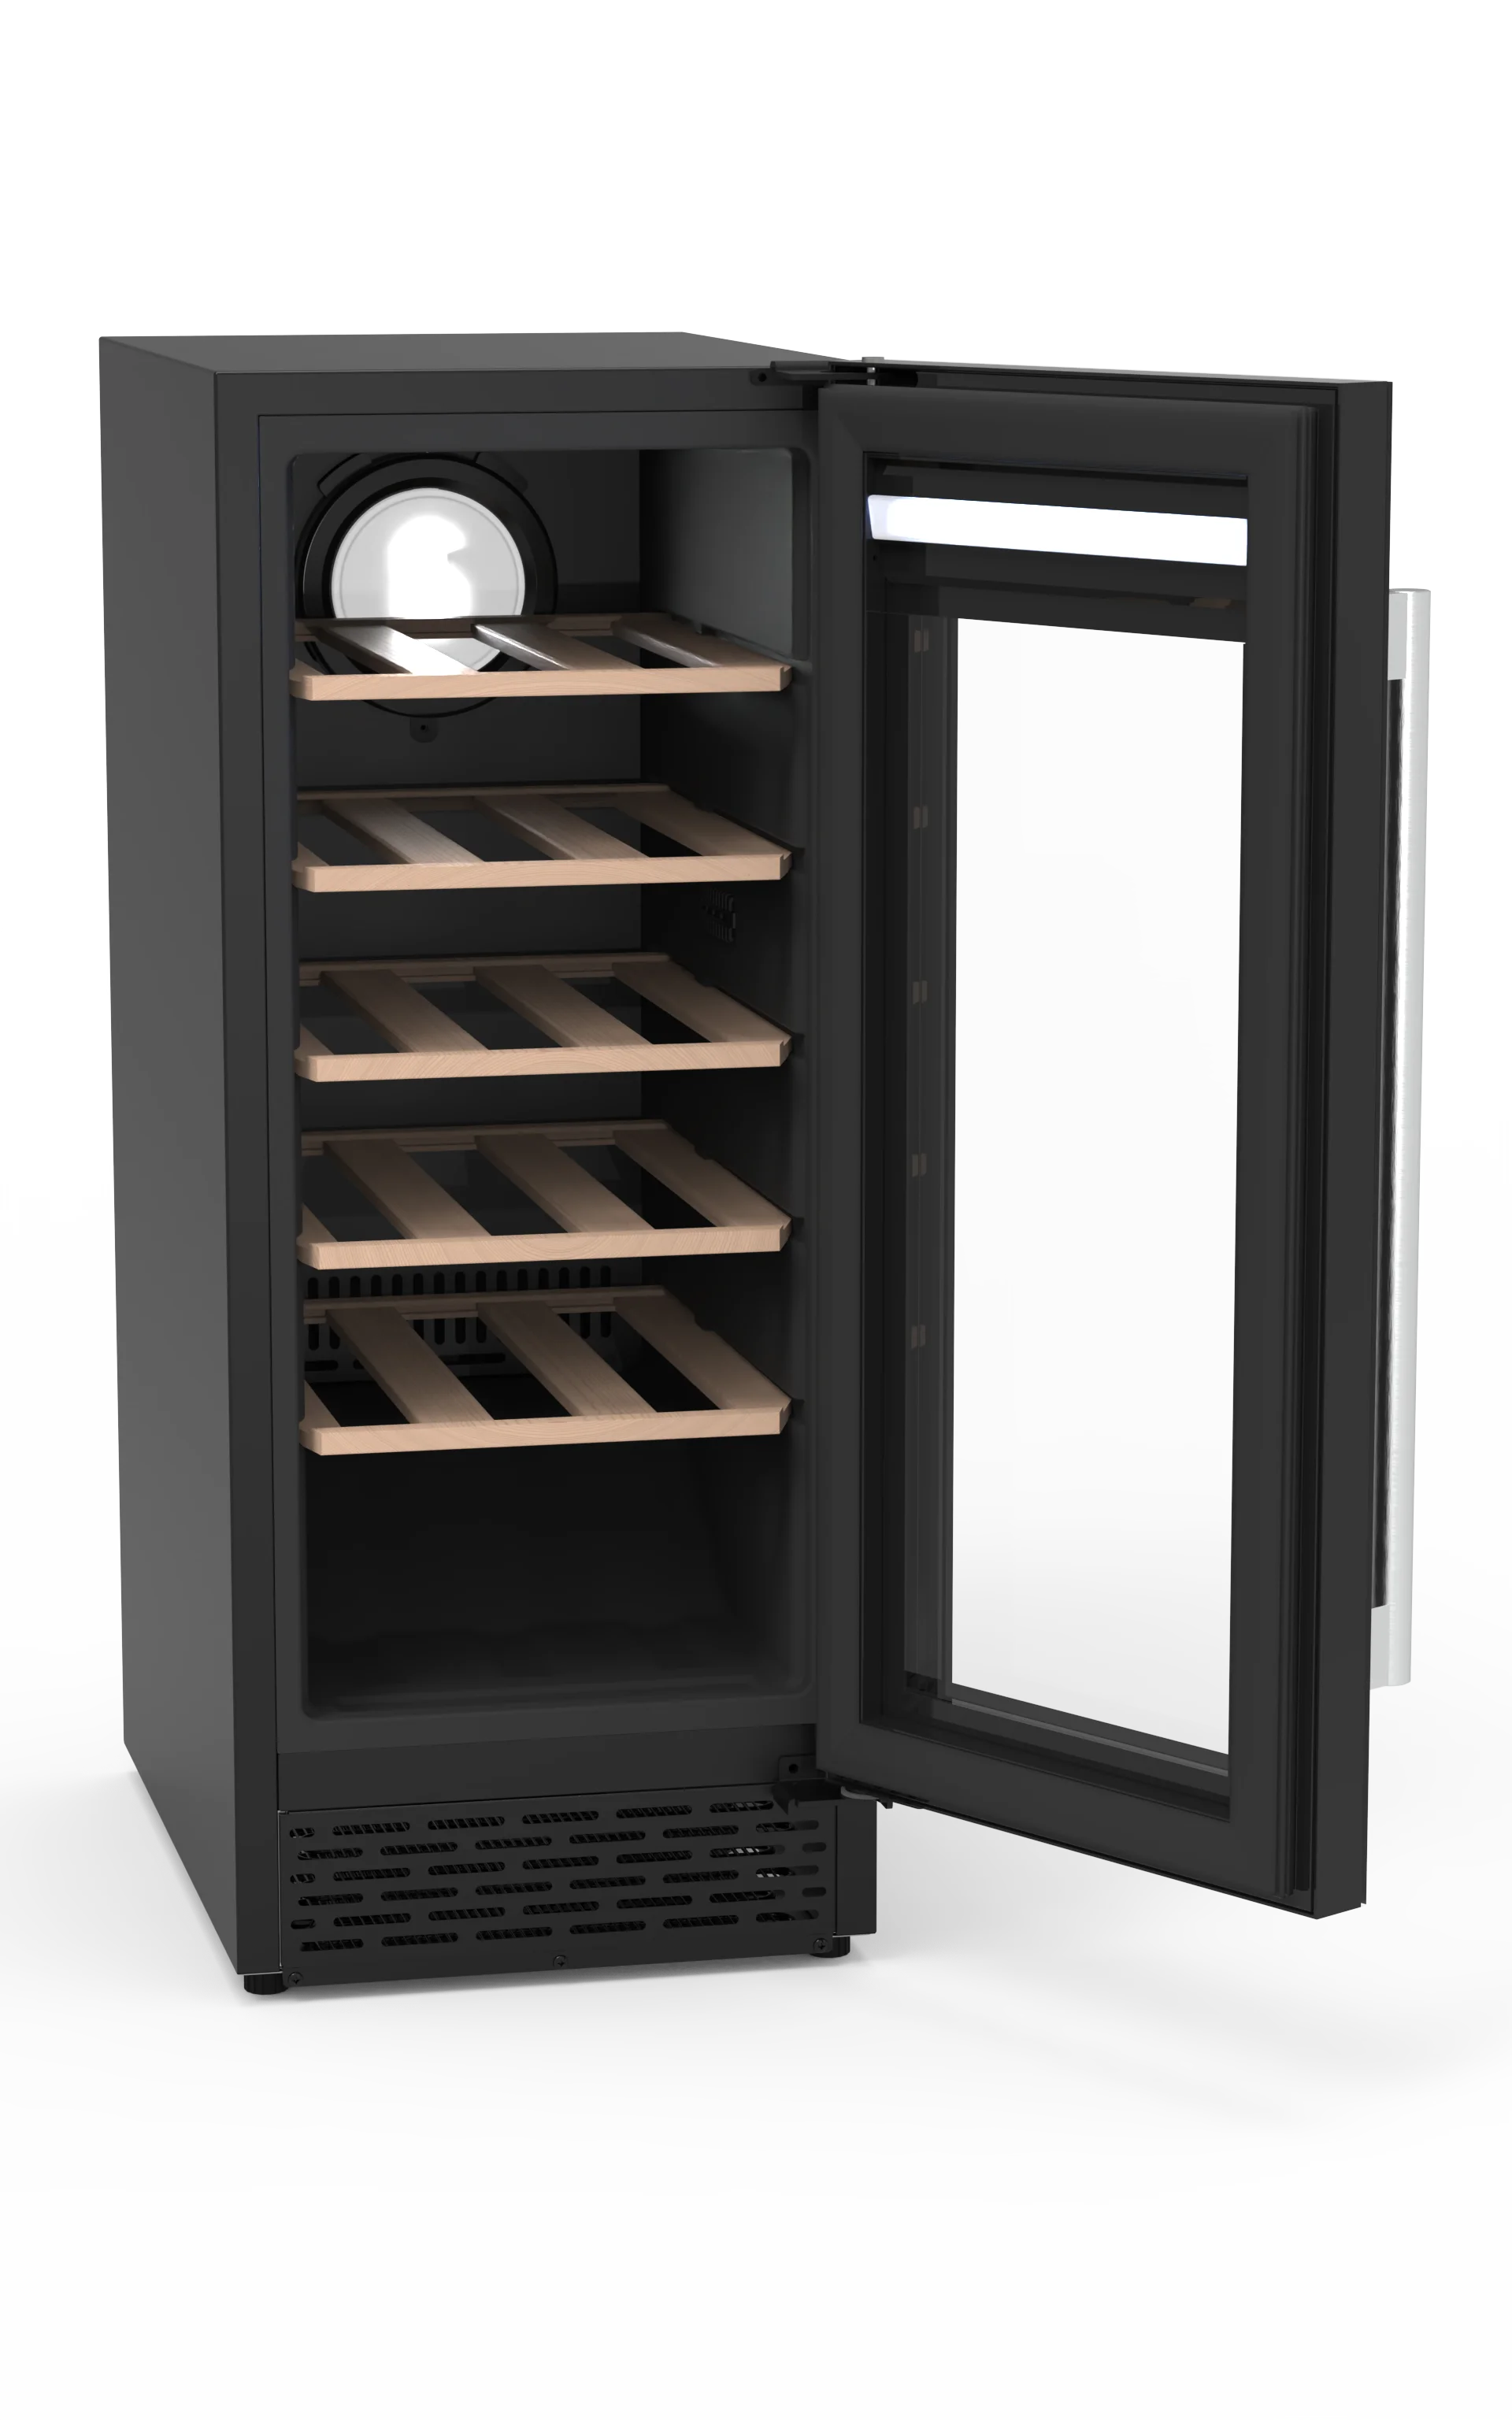 Электрический винный холодильник, погреб, холодильник на 24 бутылки, открытый холодильник, встроенный однозонный винный холодильник